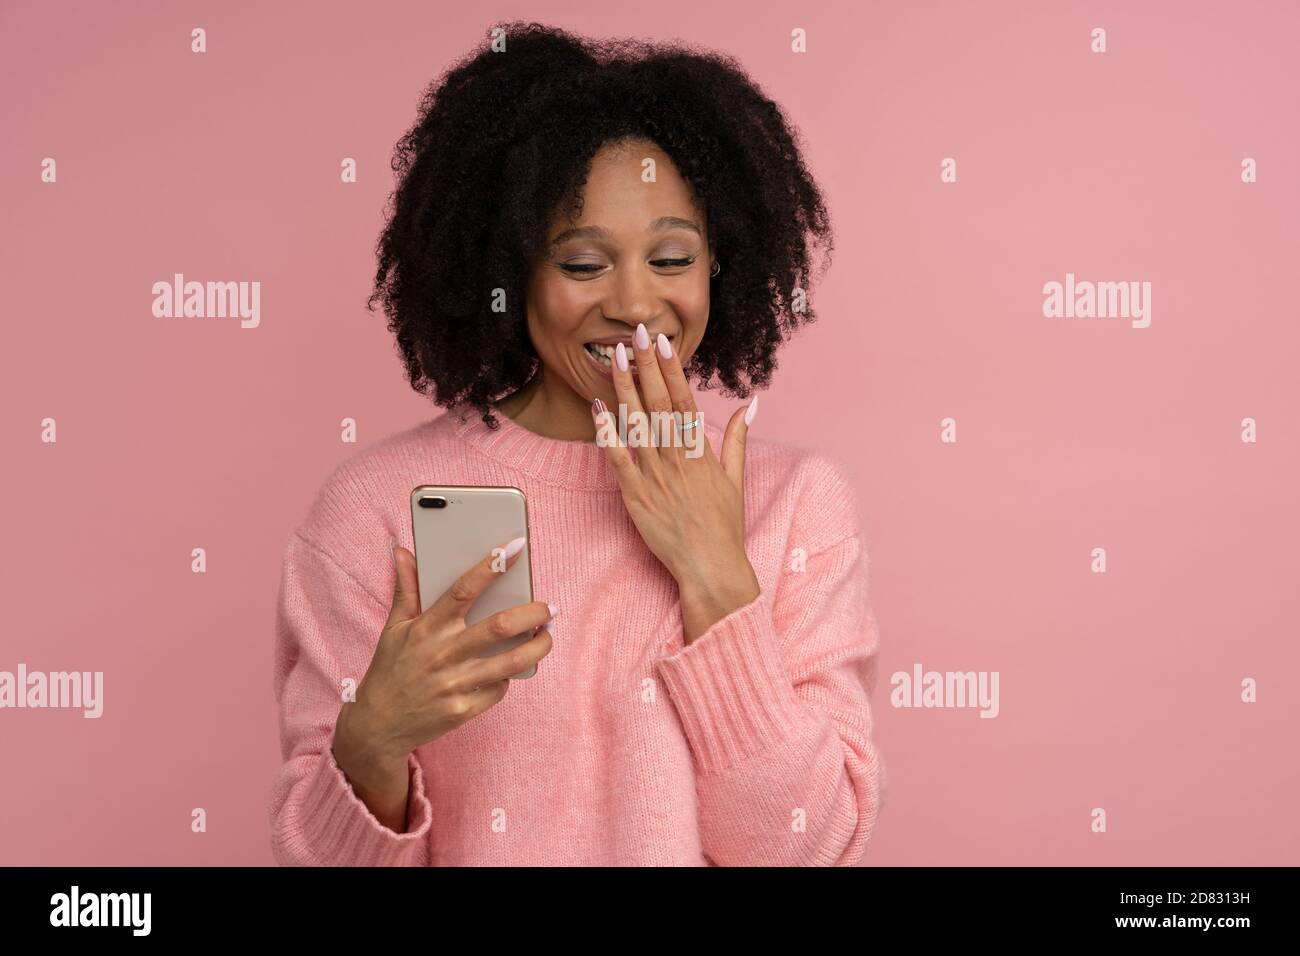 Femme millénaire souriante à la peau sombre, regardant un téléphone mobile en état de choc, couvrant sa bouche large avec la main, lisant le message de son ami, confit Banque D'Images